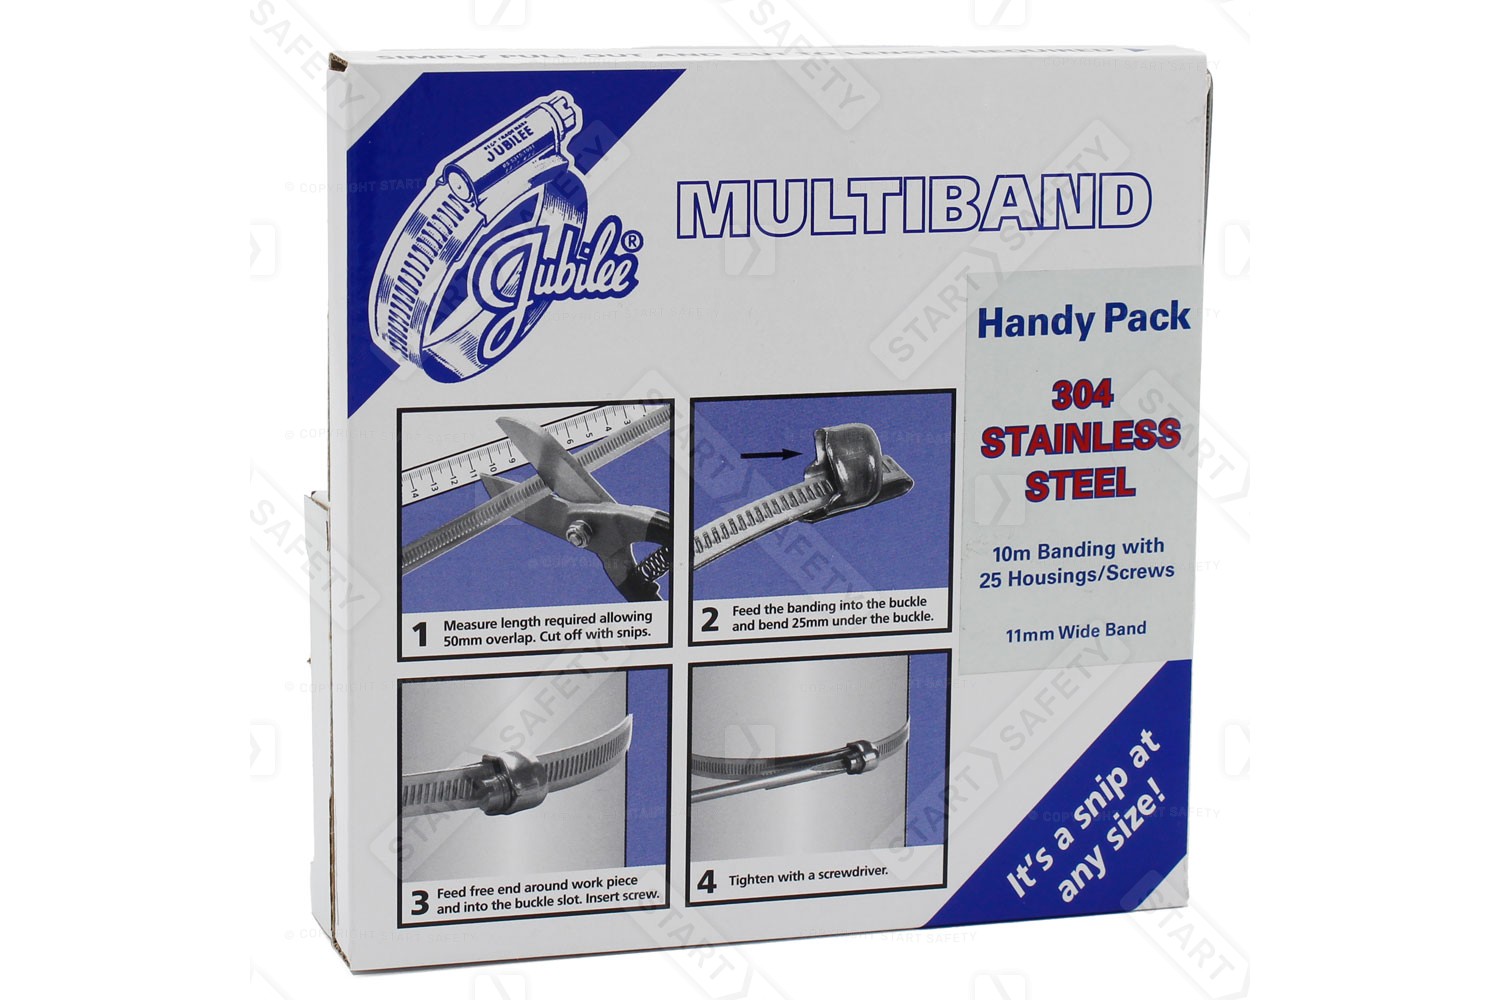 Stainless steel Multiband starter kit